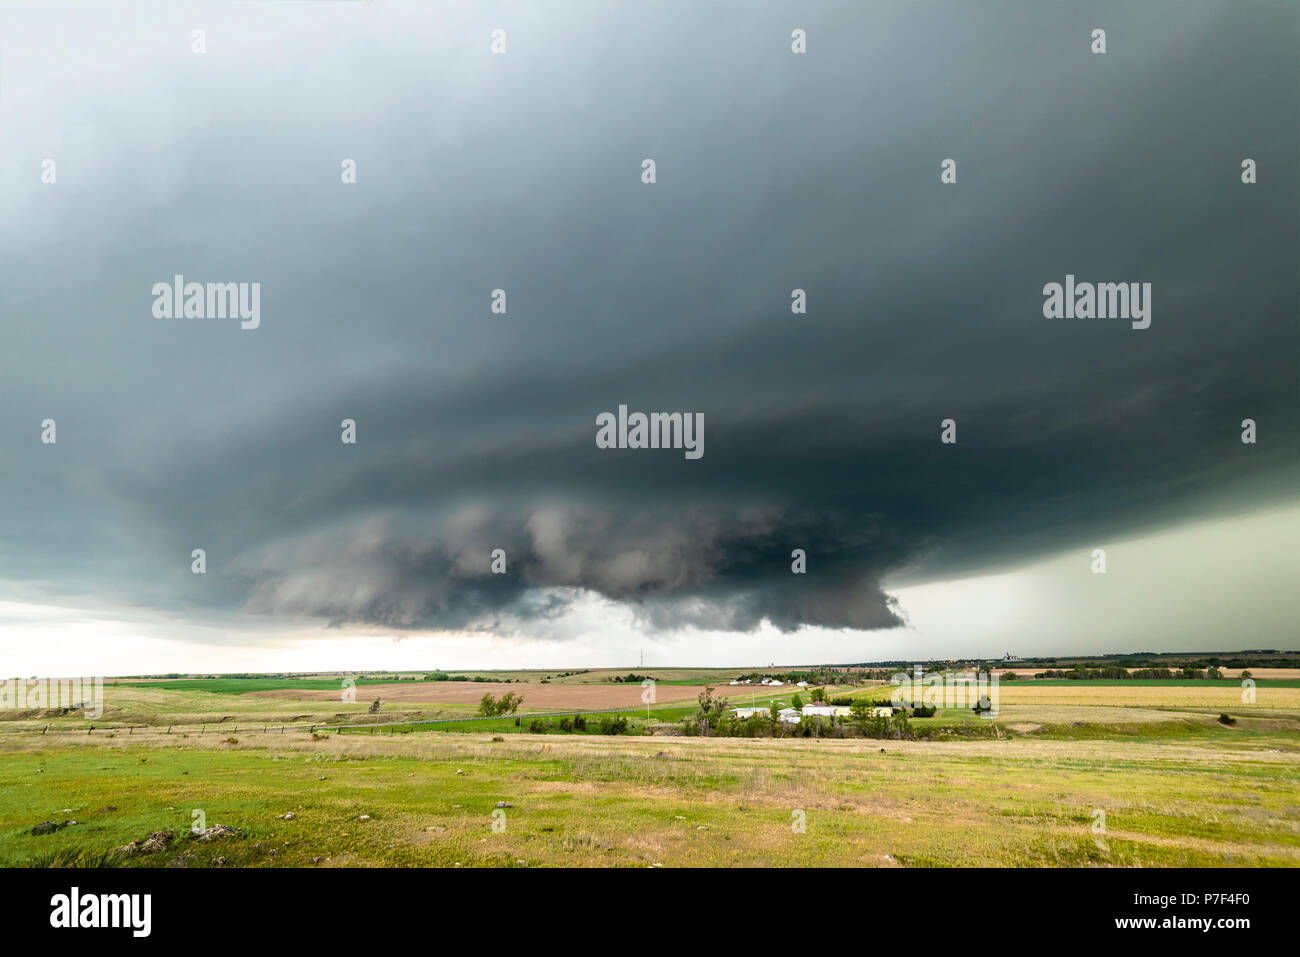 Große, leistungsfähige tornadic supercell Sturm über einer kleinen Stadt in Oklahoma wird die Bühne für die Bildung von Tornados über Tornado Alley. Stockfoto